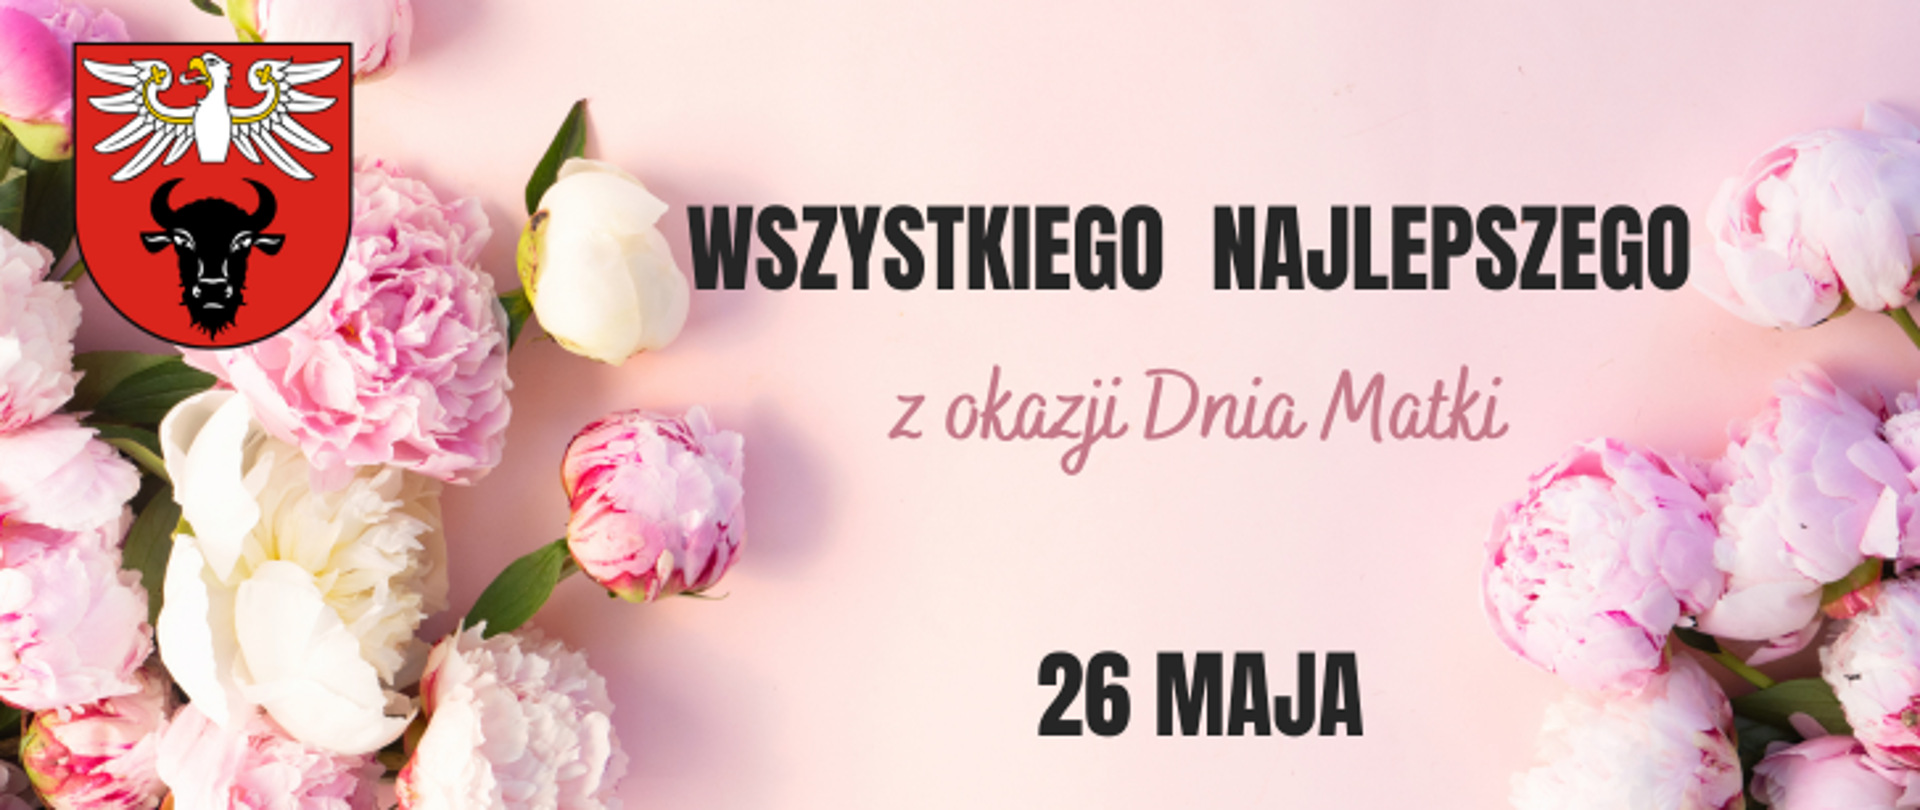 zdjęcie przedstawia banner z grafiką, na której znajdują się różowe kwiaty, logo powiatu oraz napis "WSZYSTKIEGO NAJLEPSZEGO z okazji Dnia Matki 26 MAJA"